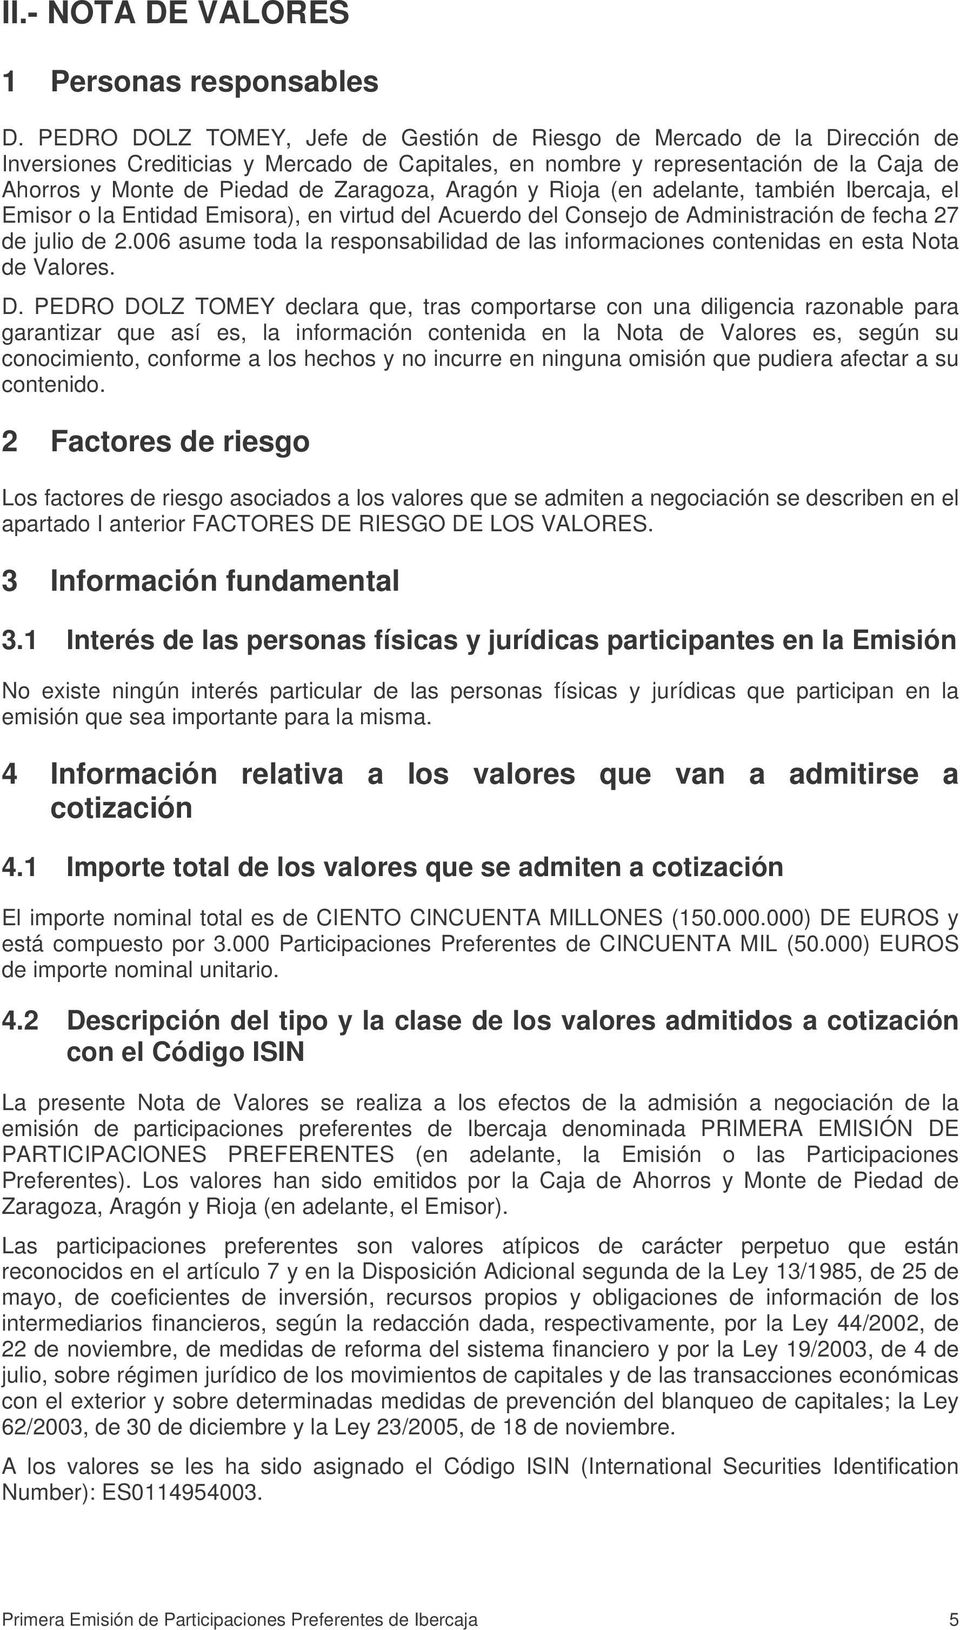 Zaragoza, Aragón y Rioja (en adelante, también Ibercaja, el Emisor o la Entidad Emisora), en virtud del Acuerdo del Consejo de Administración de fecha 27 de julio de 2.